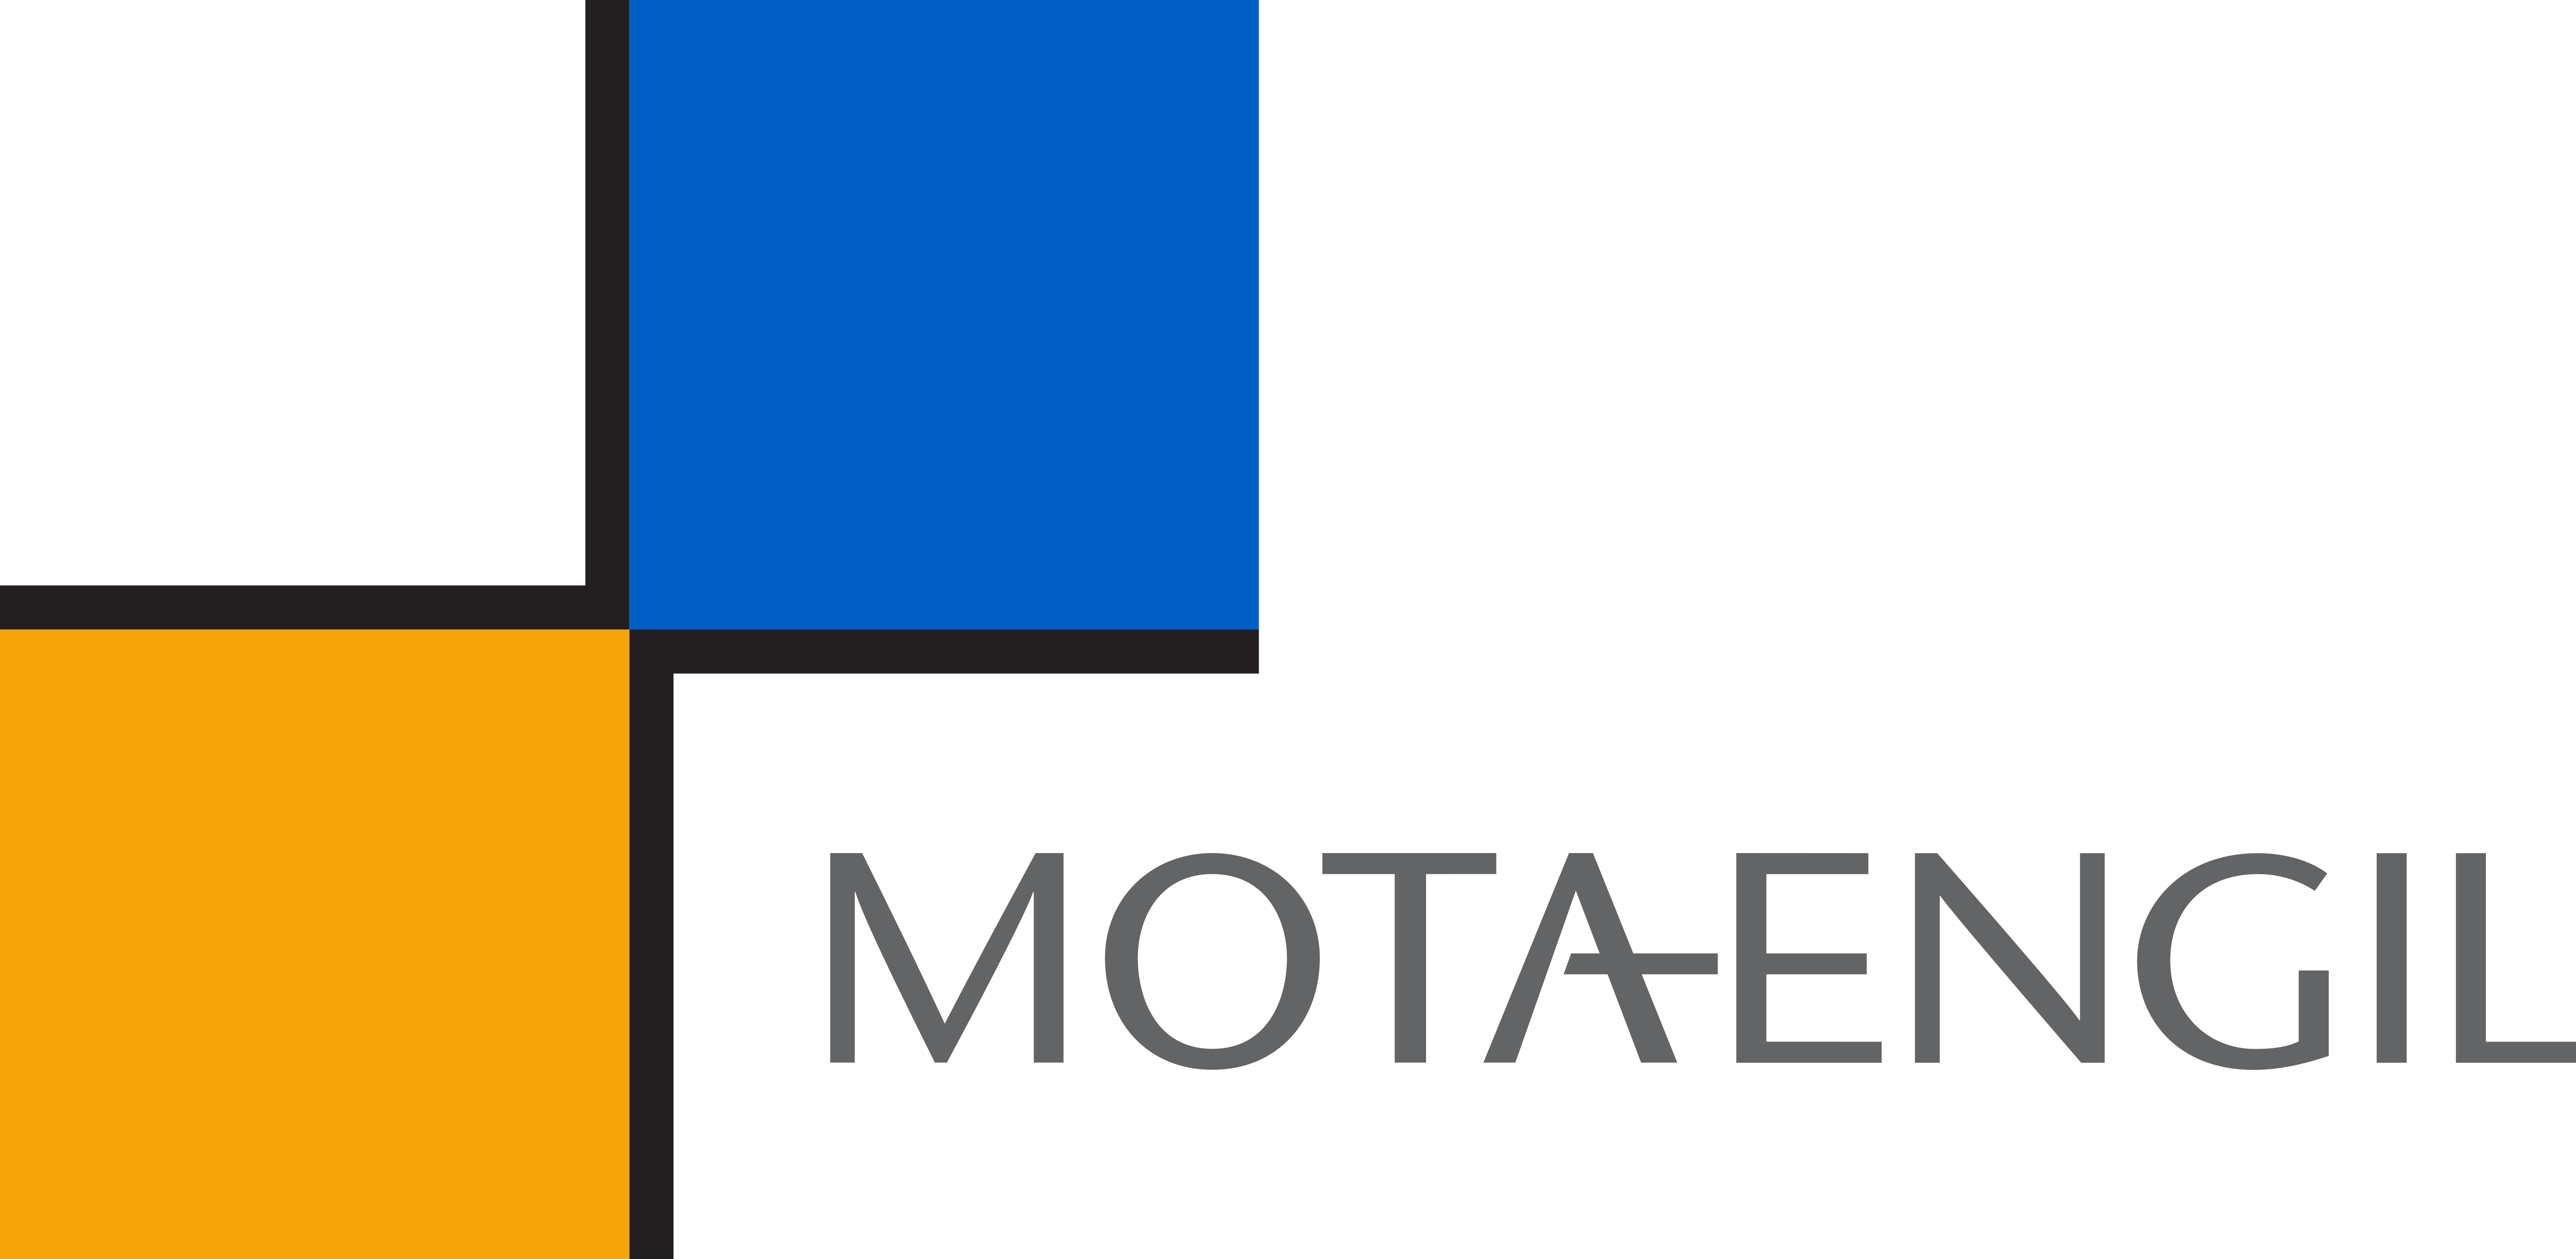 Mota Engil – Logos Download